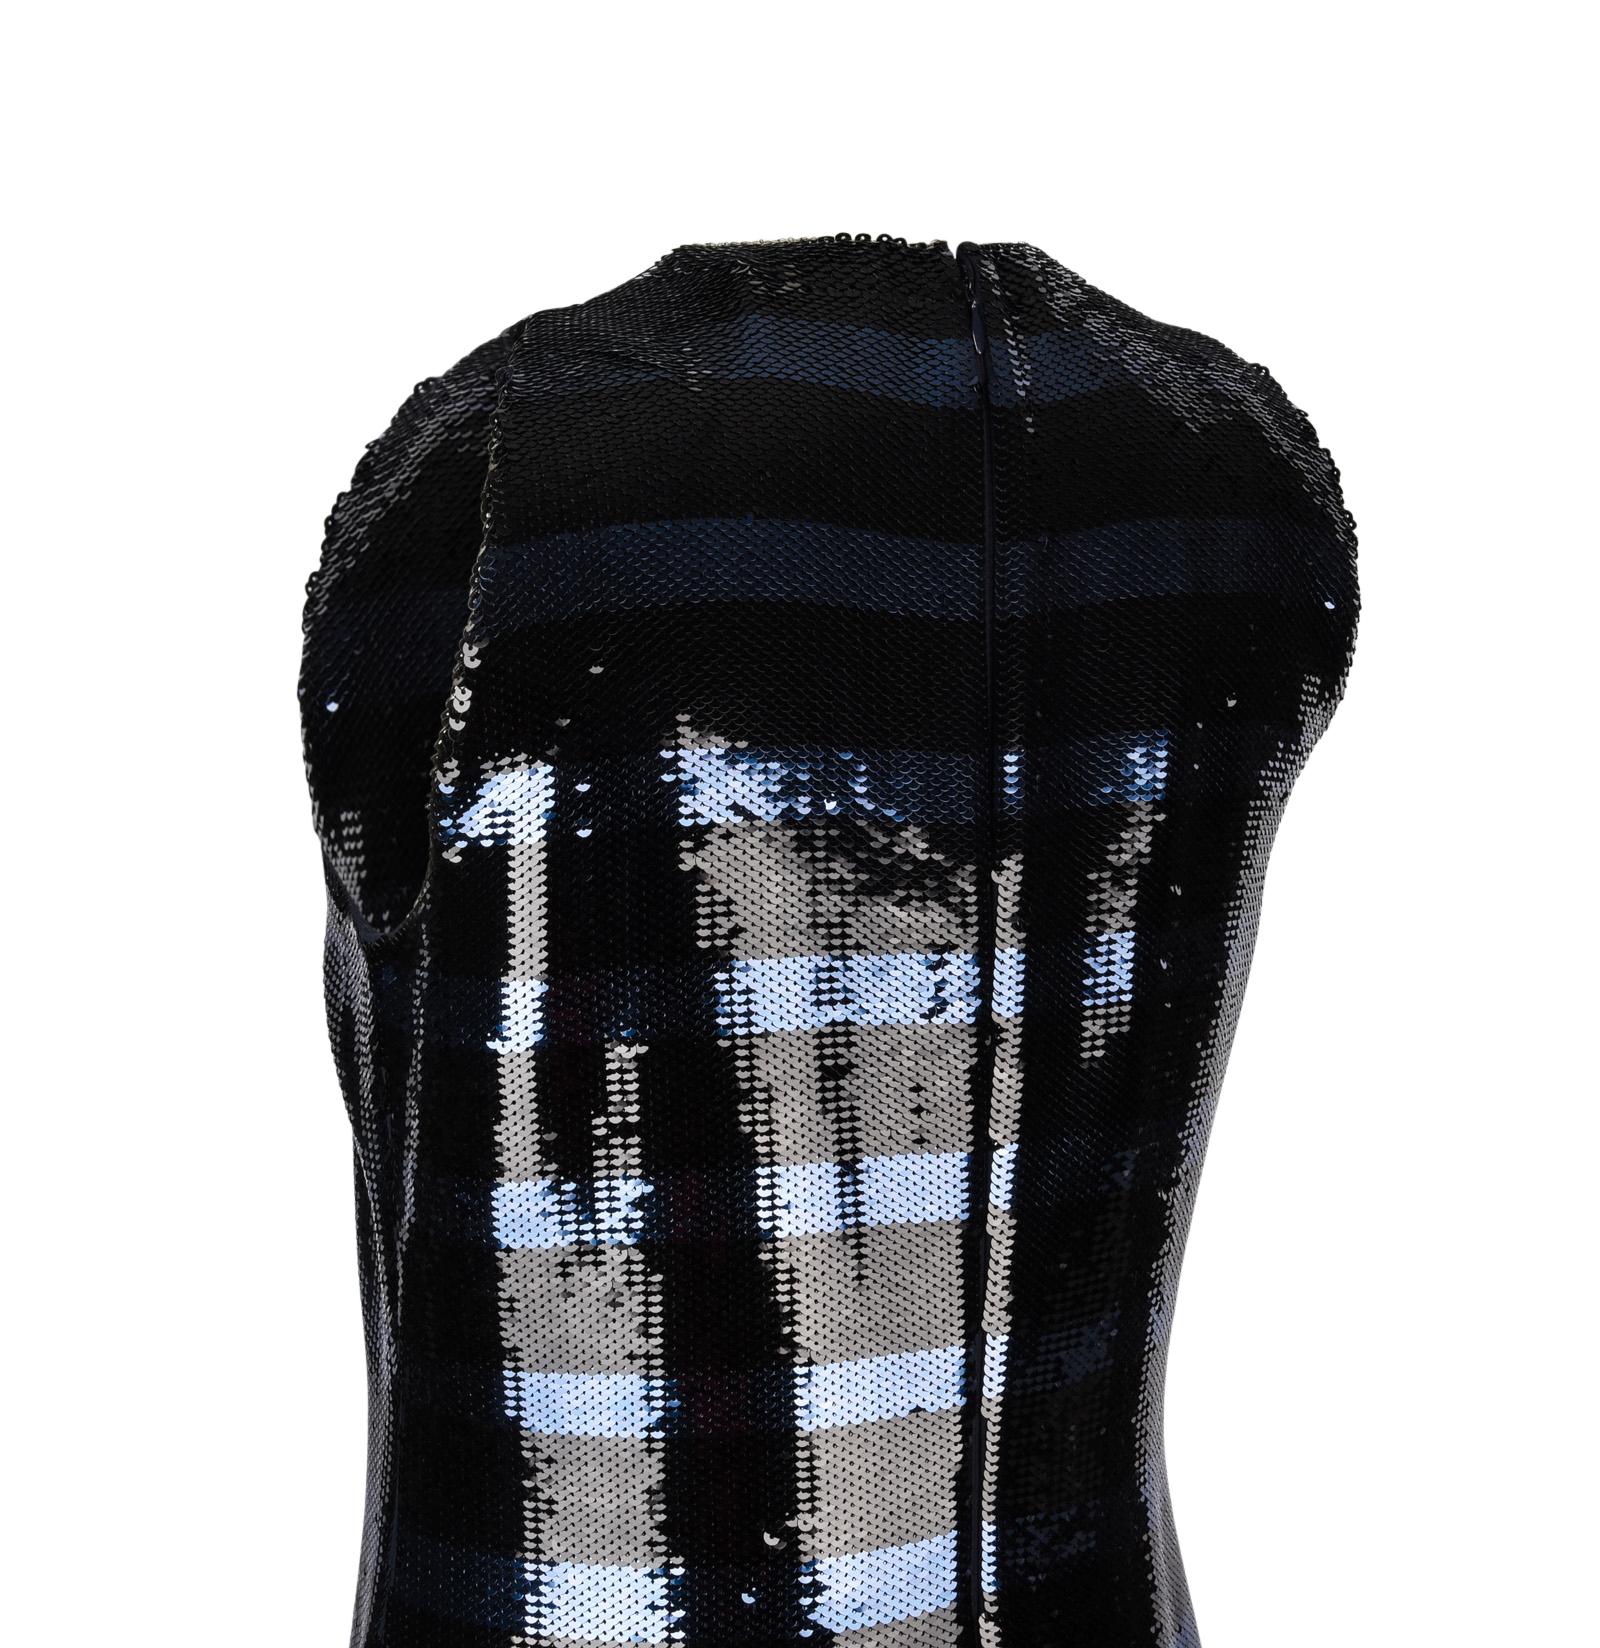 Christian Dior Dress Striped Sequin Embellished Navy / Black 6 8